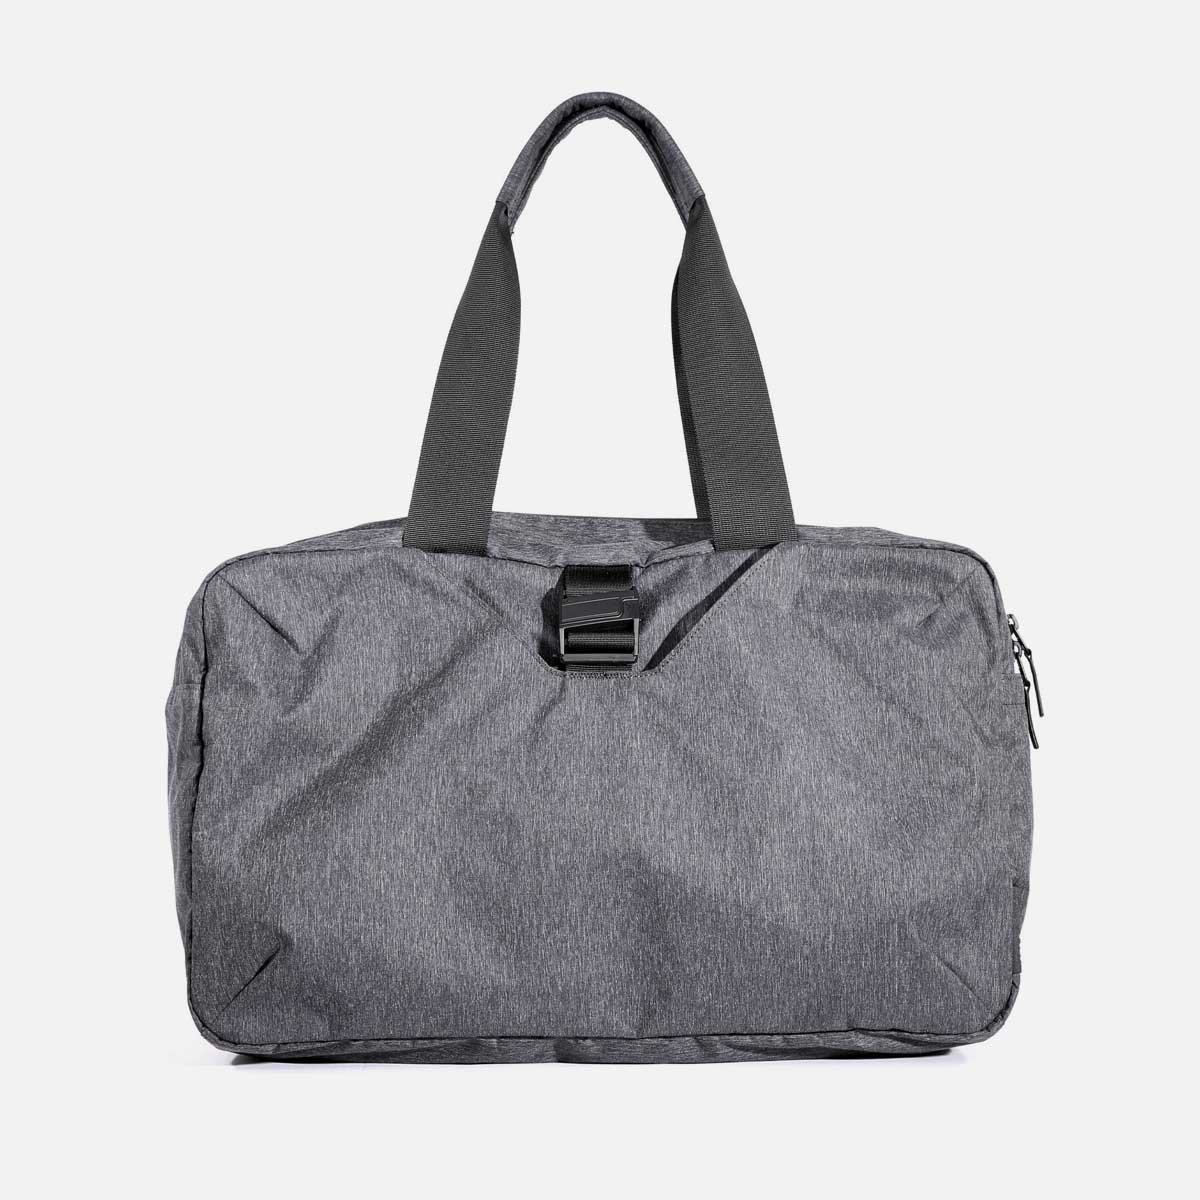 Go Duffel - Heathered Black — Aer | Modern gym bags, travel backpacks ...